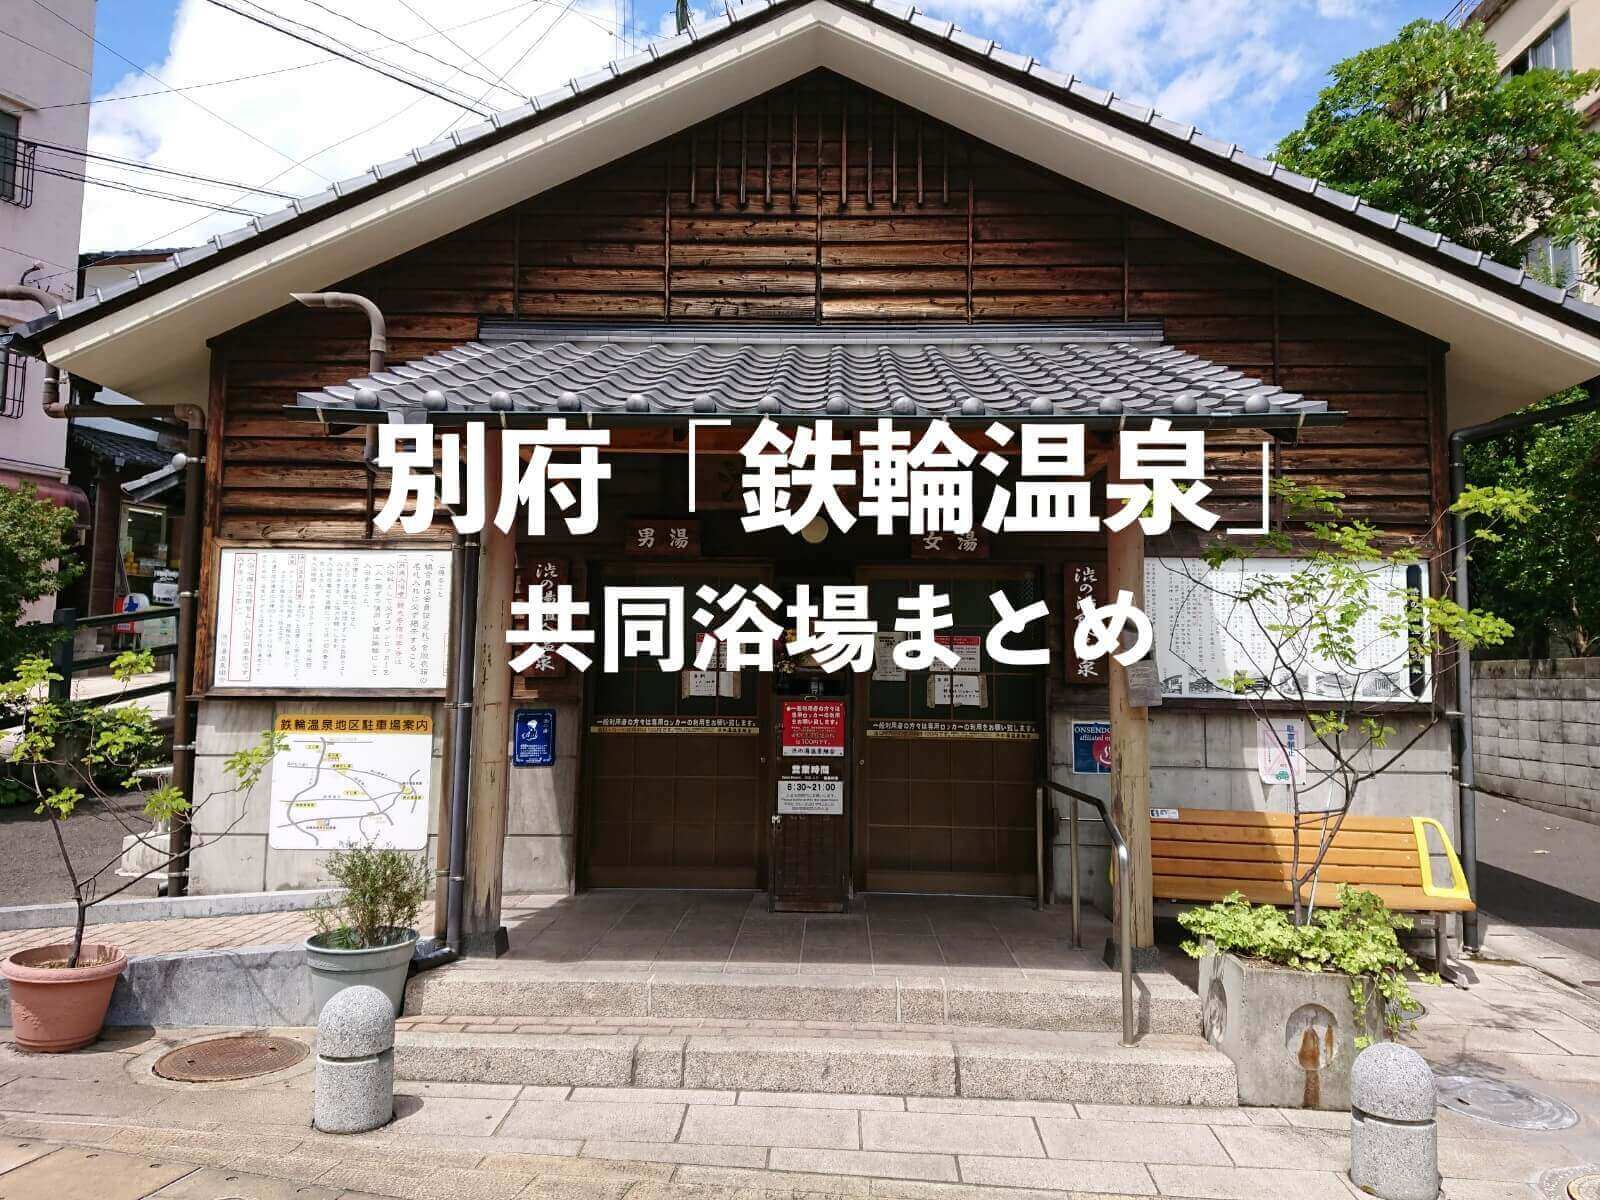 別府 鉄輪温泉の共同浴場 公衆浴場 について 全8箇所の外湯をまとめ 日本の秘湯